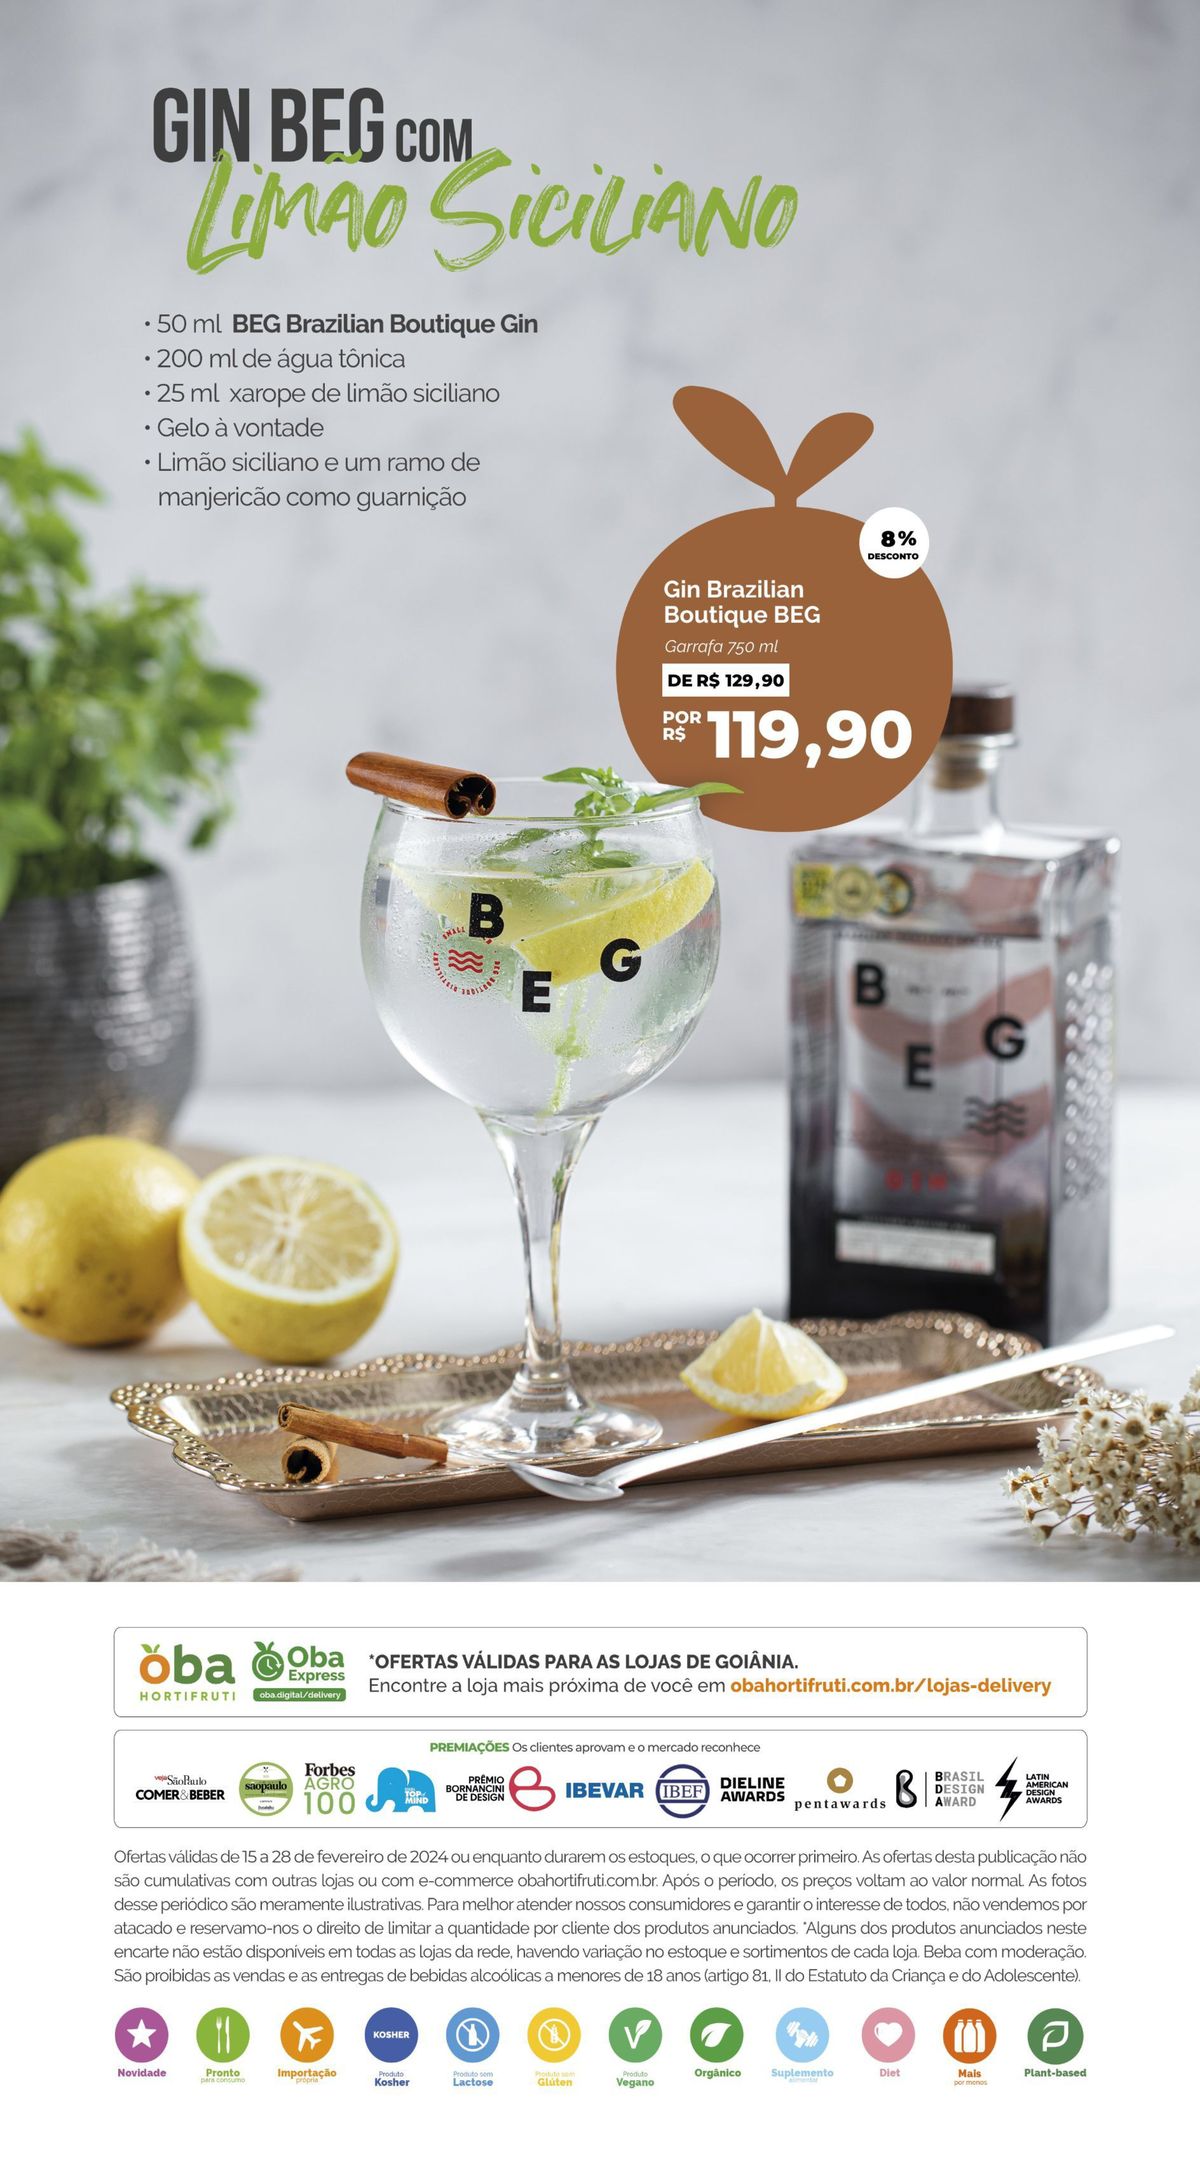 Oferta Especial: Gin Boutique BEG com água tônica e xarope de limão